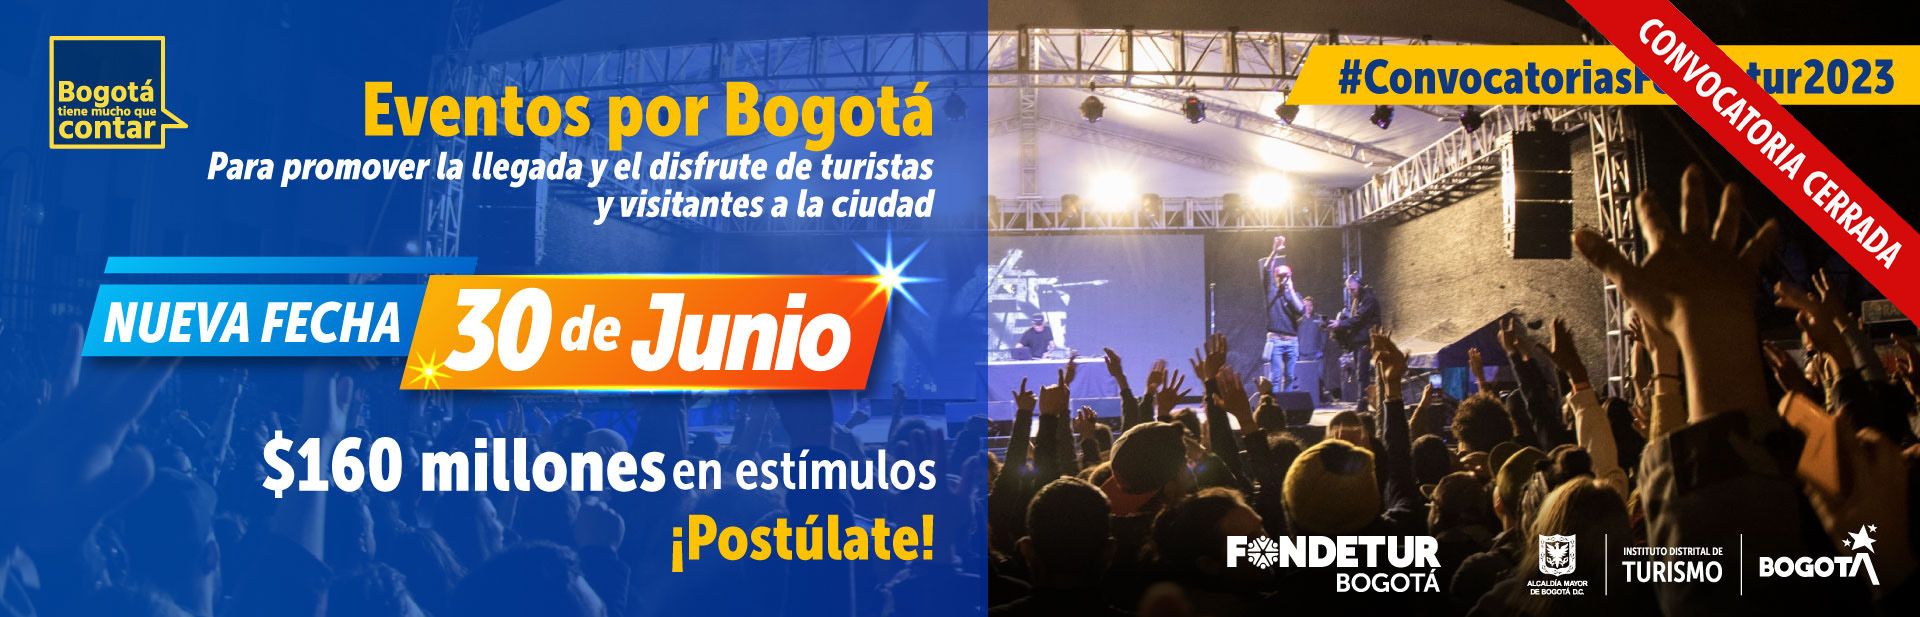 Eventos por Bogotá 